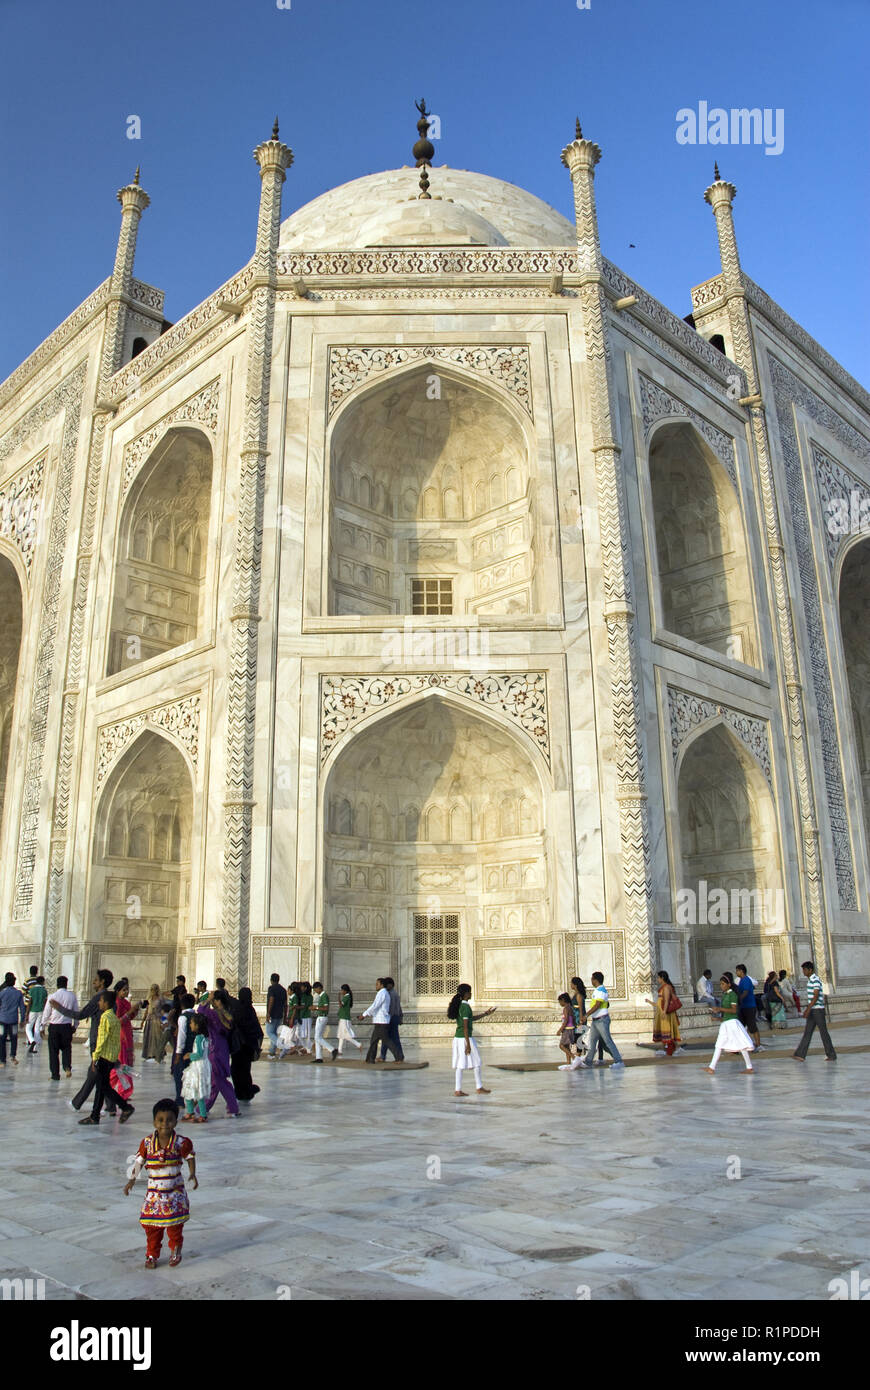 Ornate pietra dura (marqueterie de marbre) décore le Taj Mahal, le mausolée de marbre blanc construit par l'empereur Moghol Shah Jahan à Agra, Inde Banque D'Images